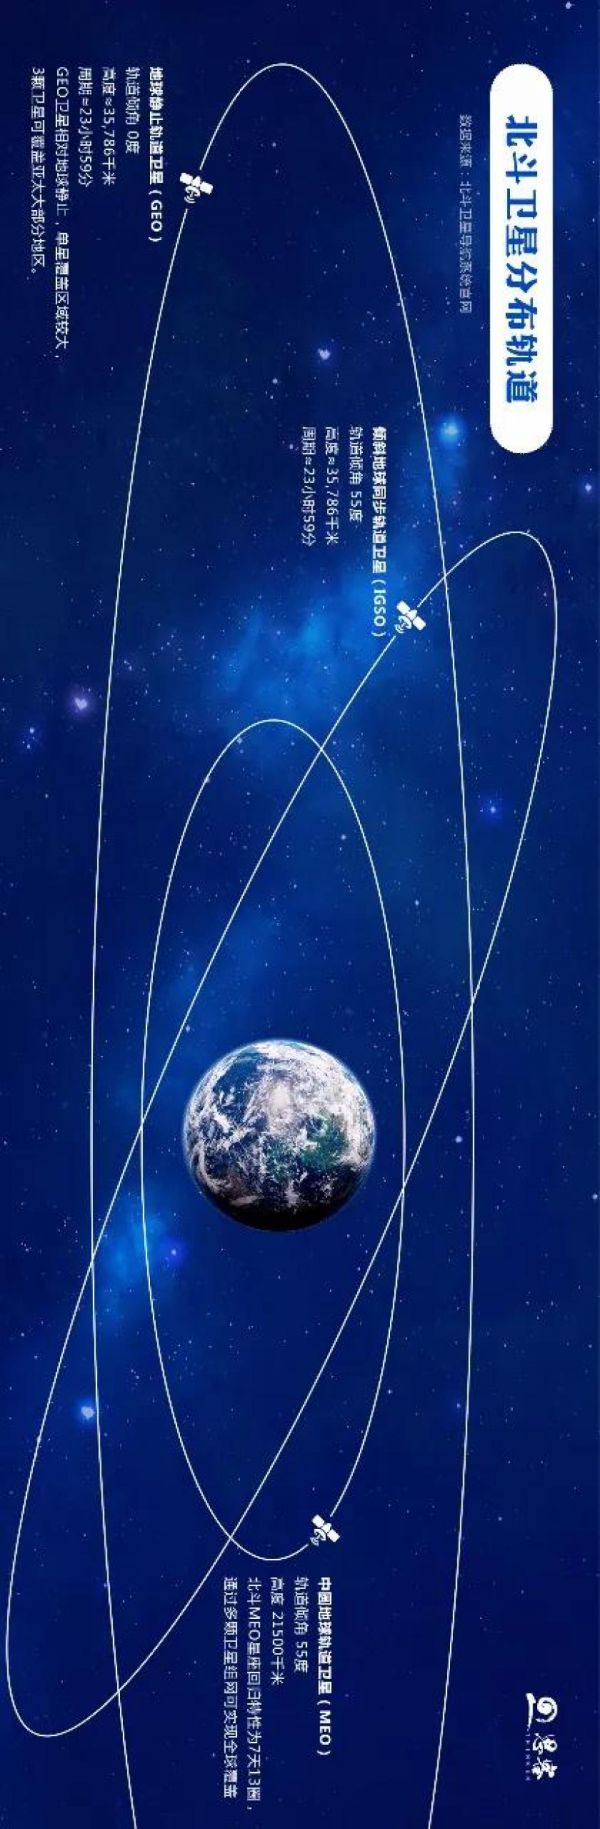 中国北斗卫星导航系统首次采用“一箭双星”方式发射导航卫星